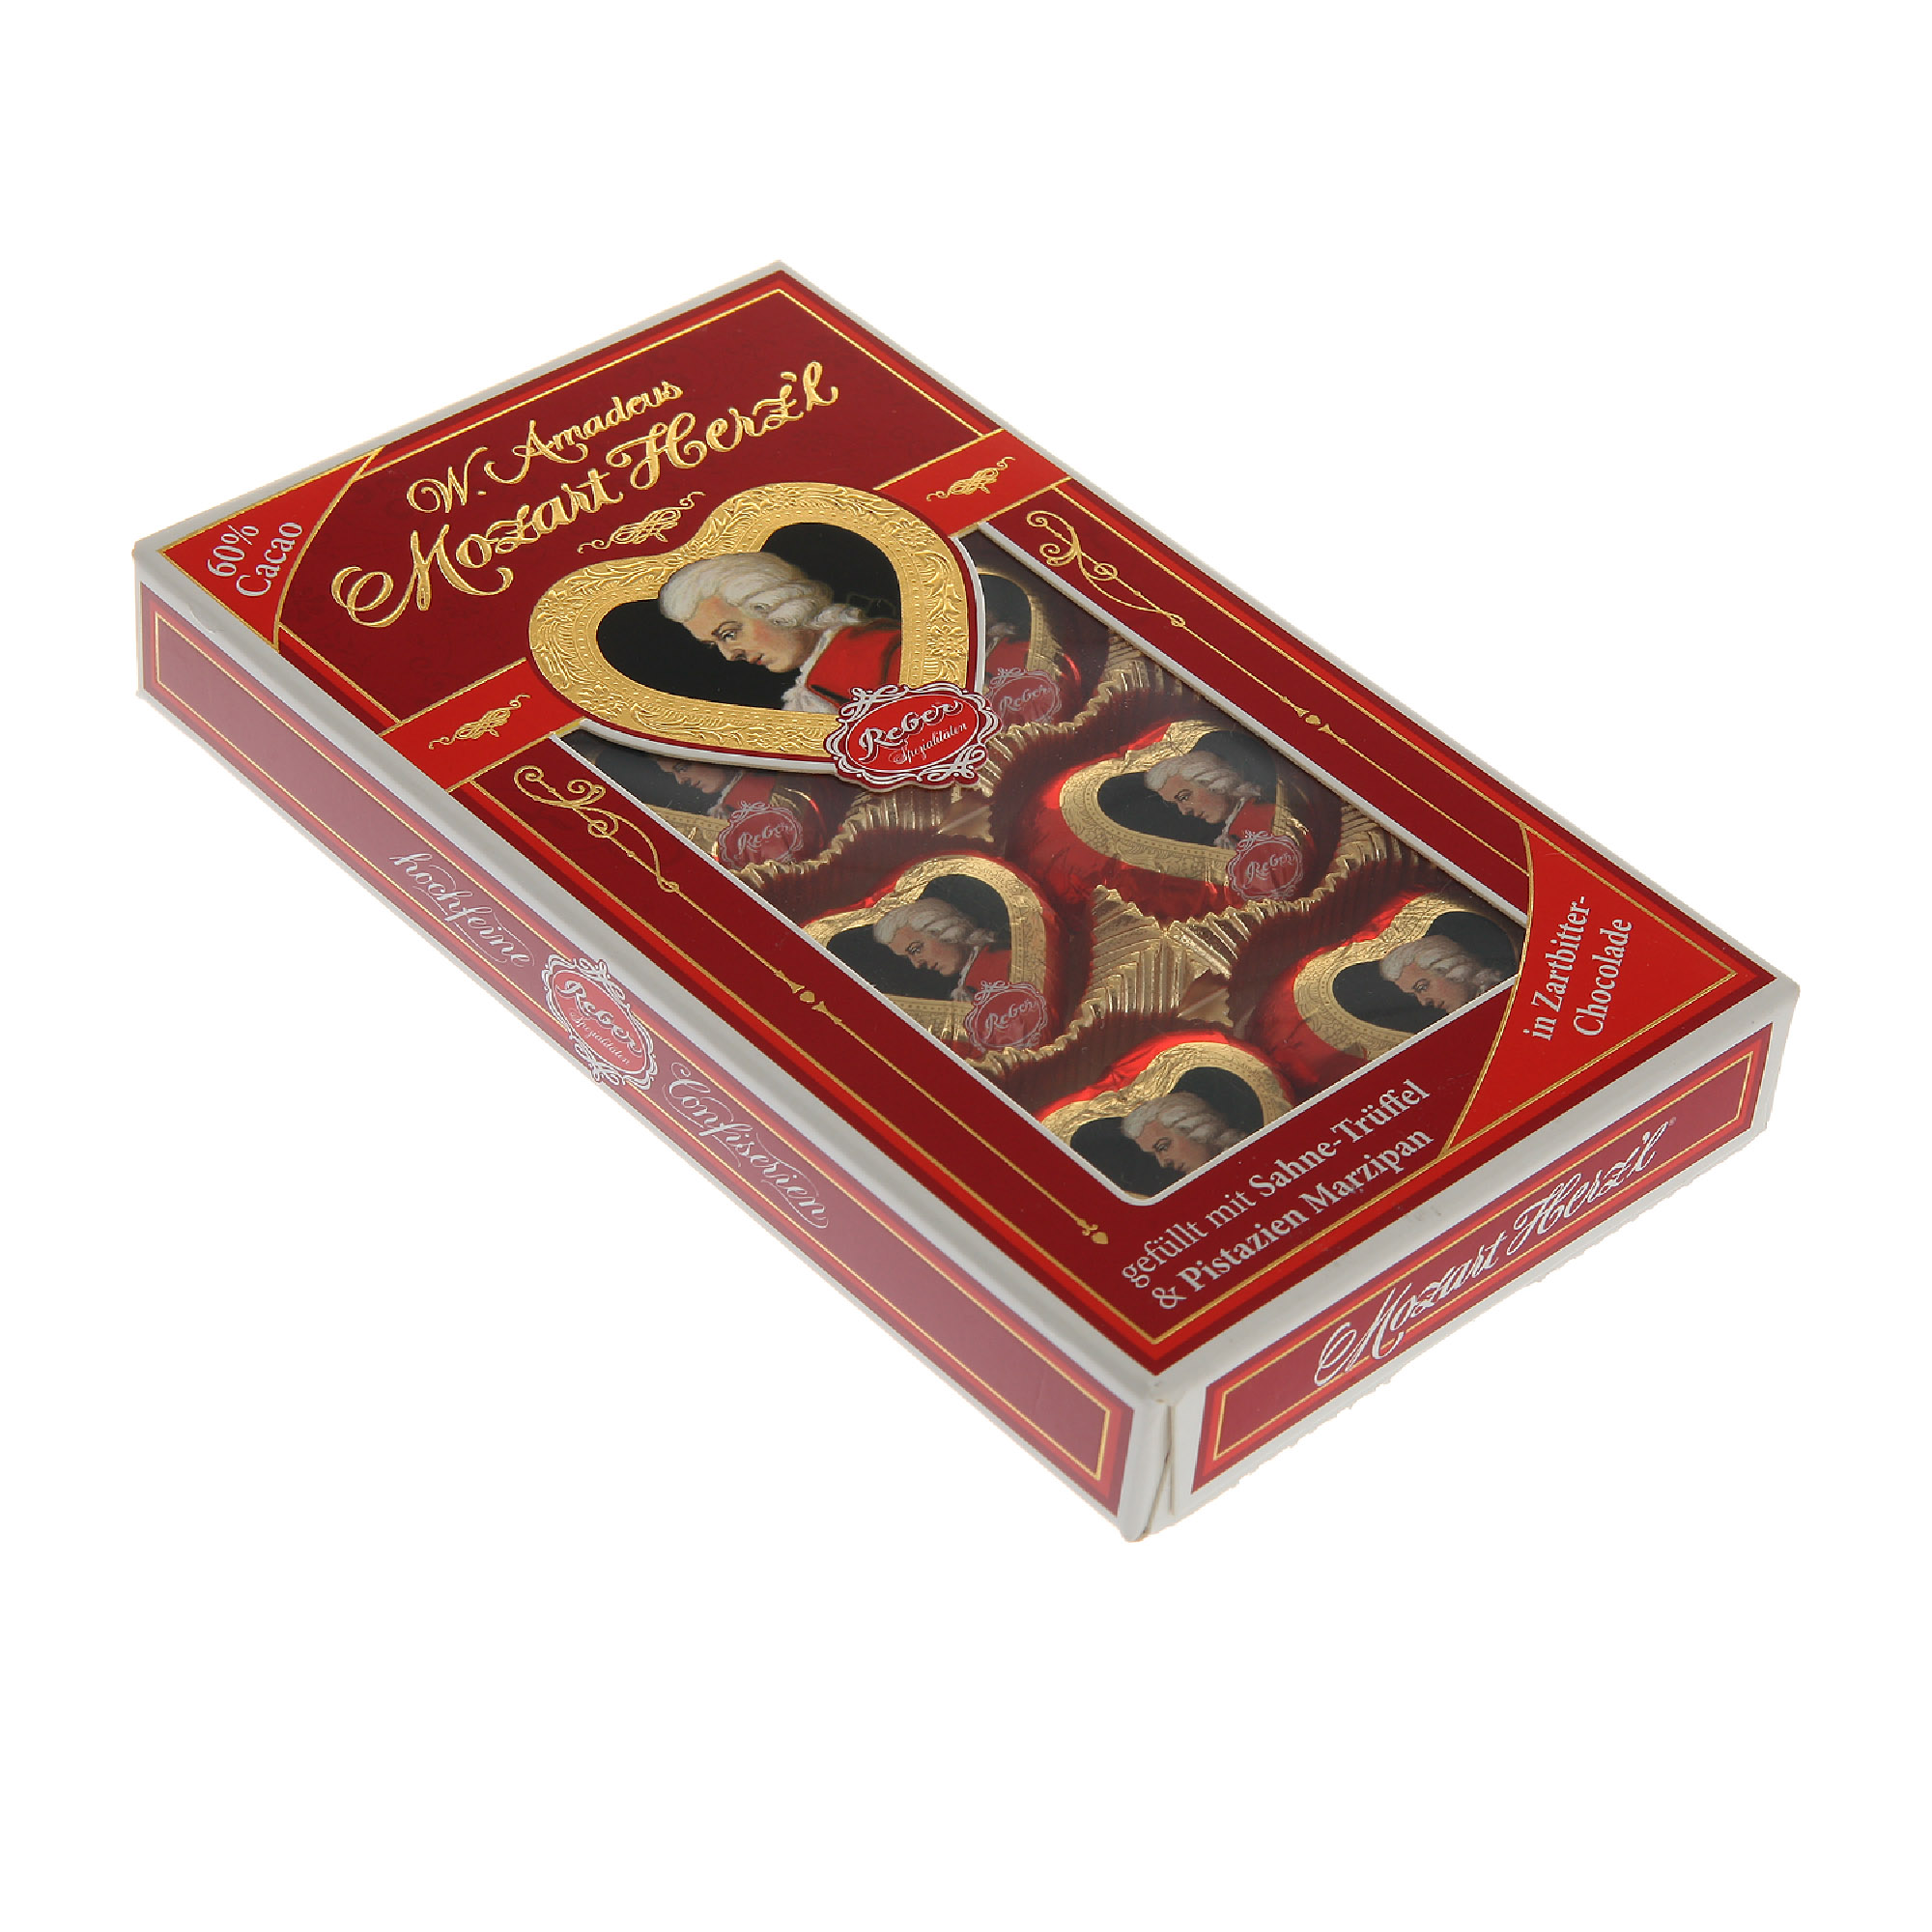 Набор конфет Reber Моцарт мини-сердечки 80 г набор конфет подарочный моцарт reber 500 525 г 1410103